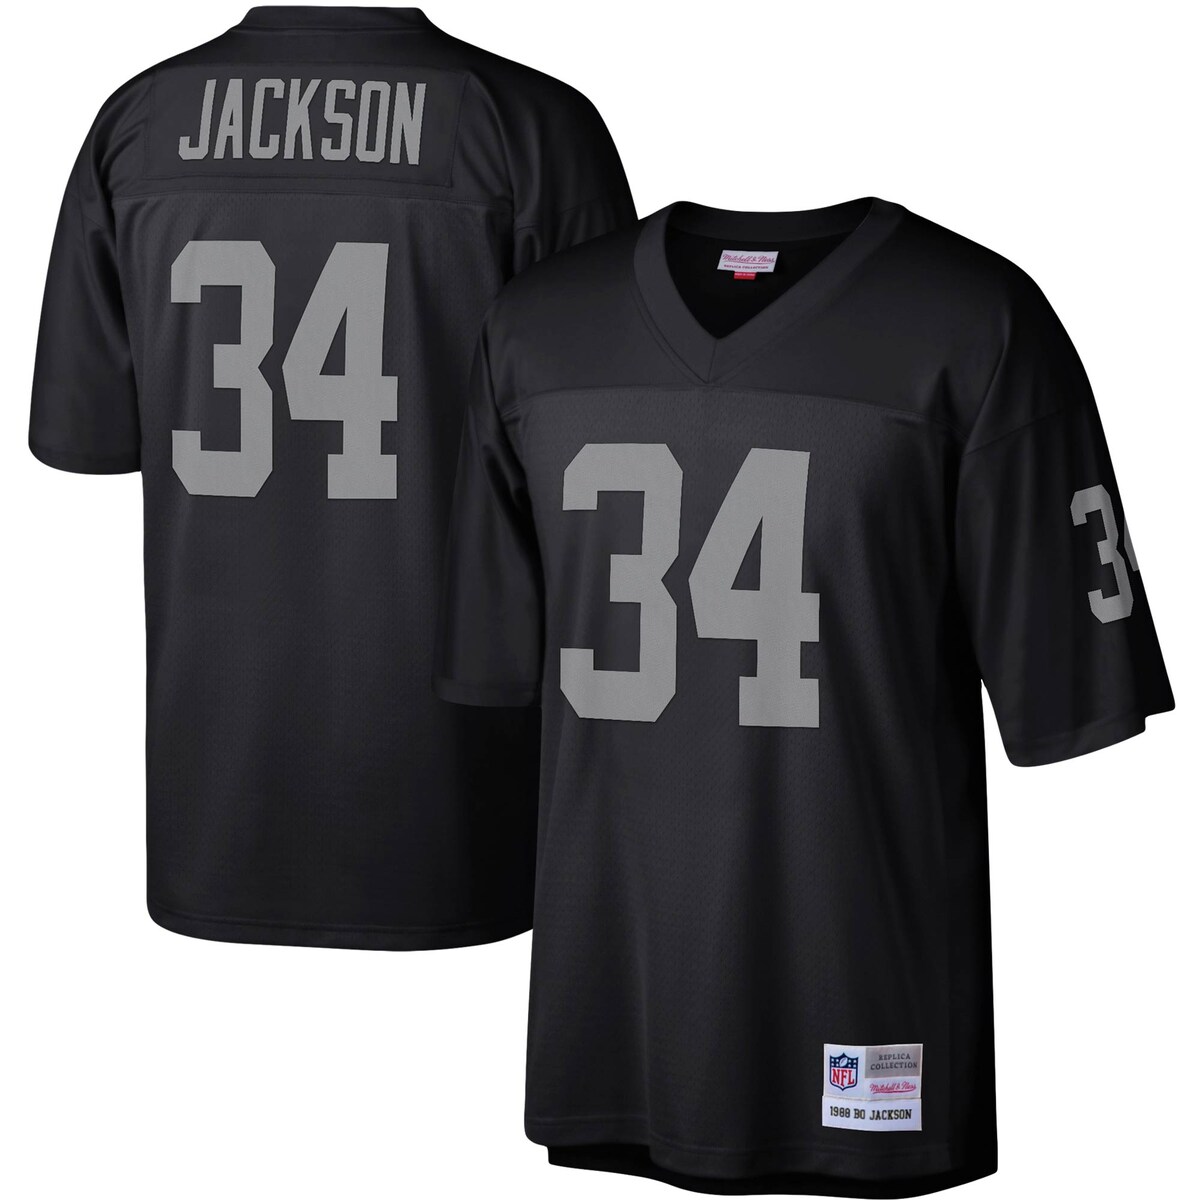 NFL レイダース ボー・ジャクソン レプリカ ユニフォーム Mitchell & Ness ミッチェル＆ネス メンズ ブラック Men s MNC Legacy Replica Jersey 